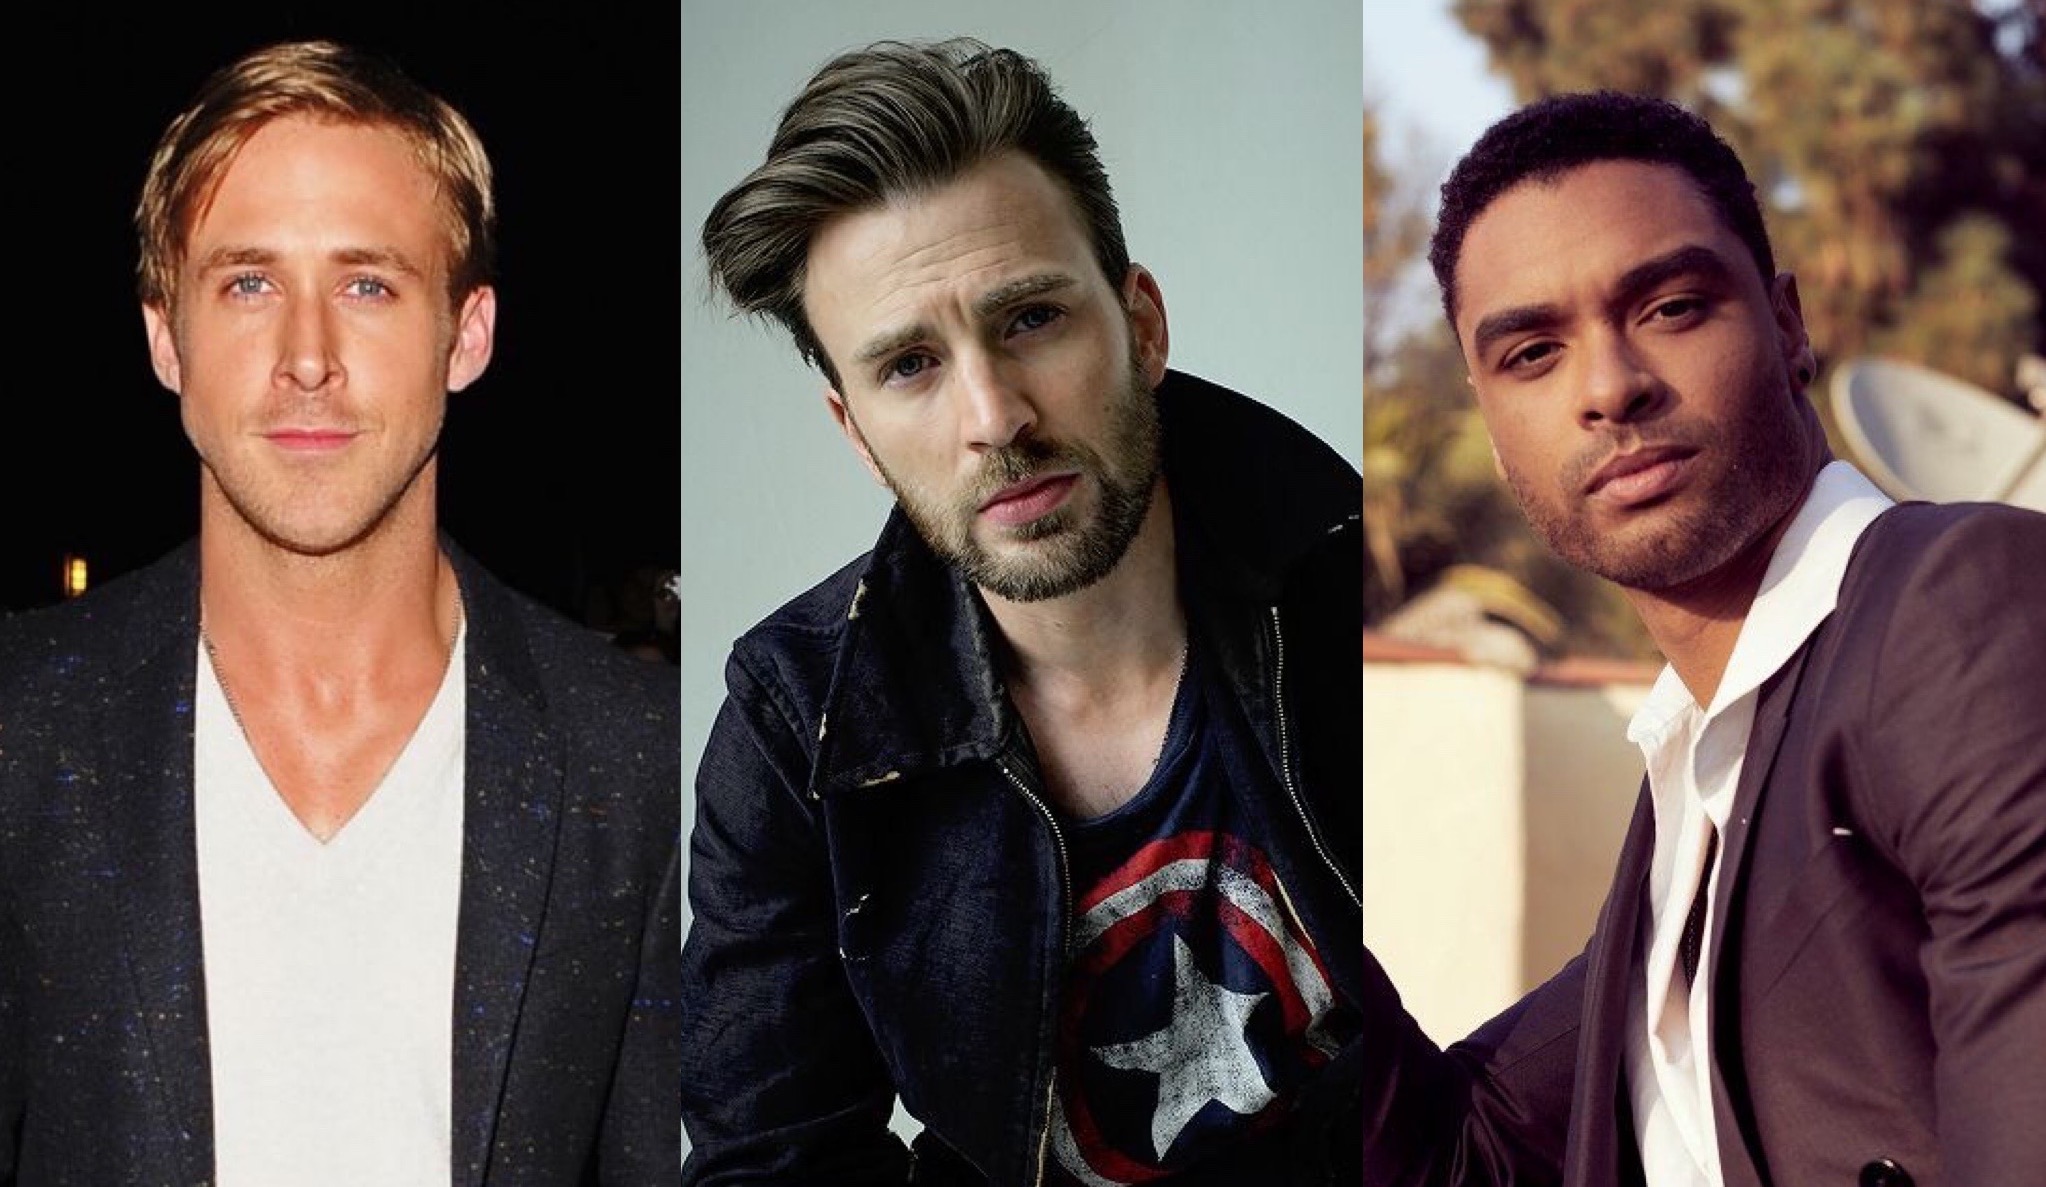 Dale un vistazo al nuevo film que reúne a Chris Evans, Ryan Gosling y Regé-Jean Page